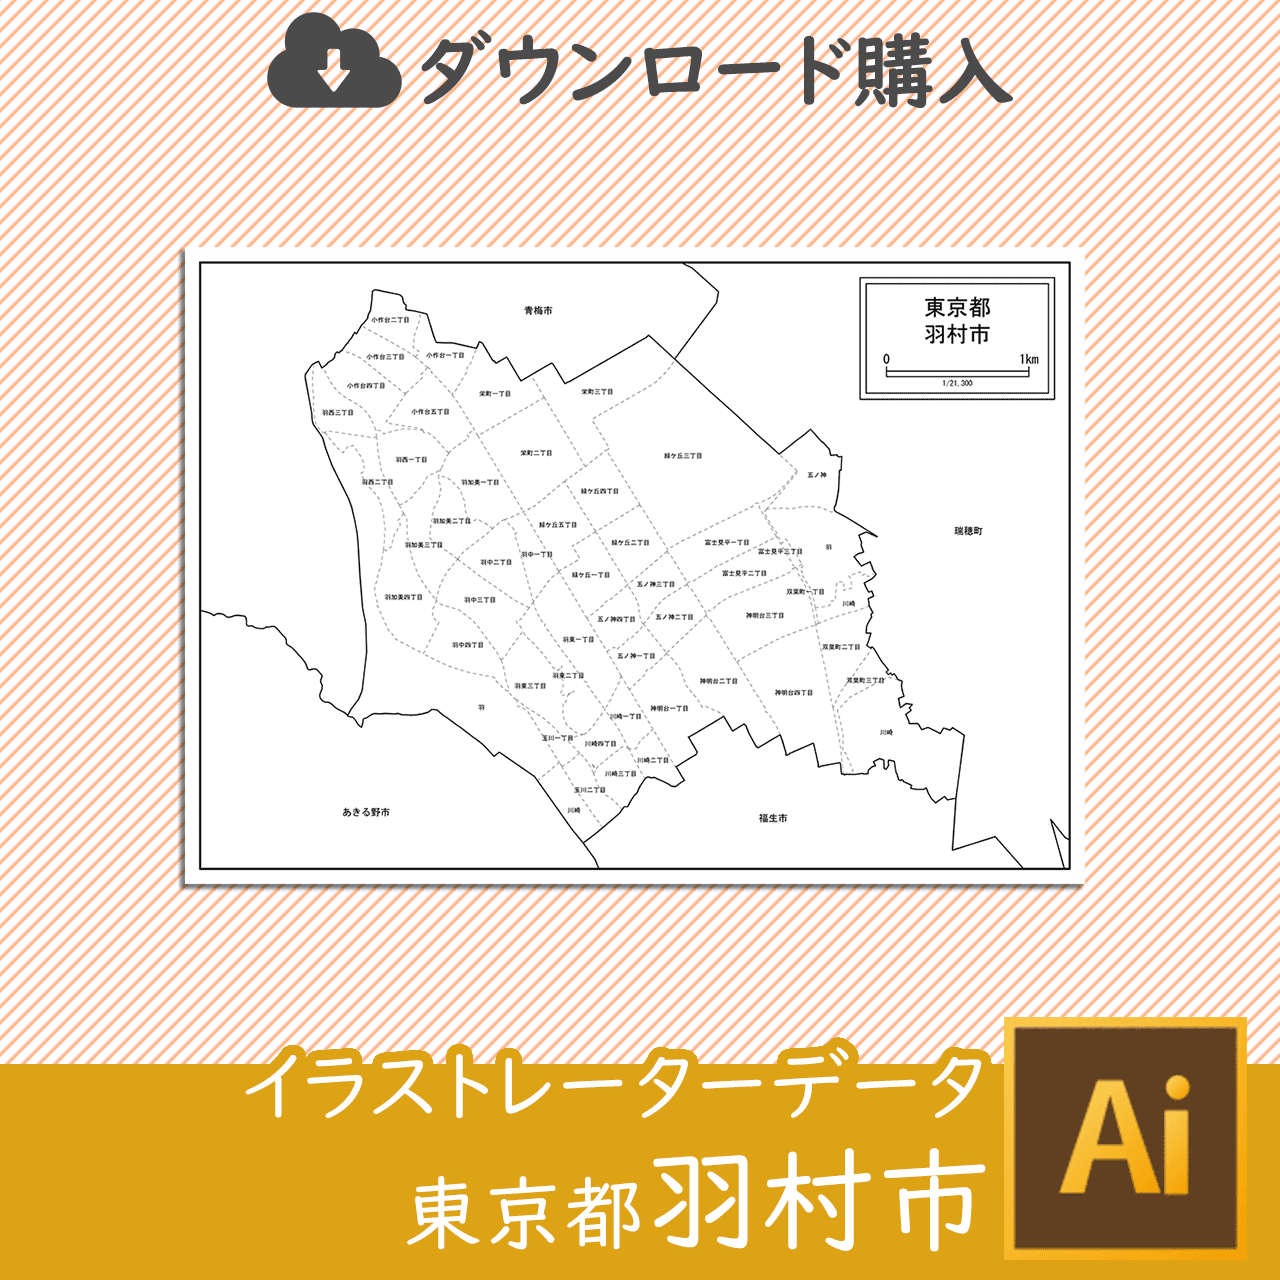 羽村市の白地図のサムネイル画像